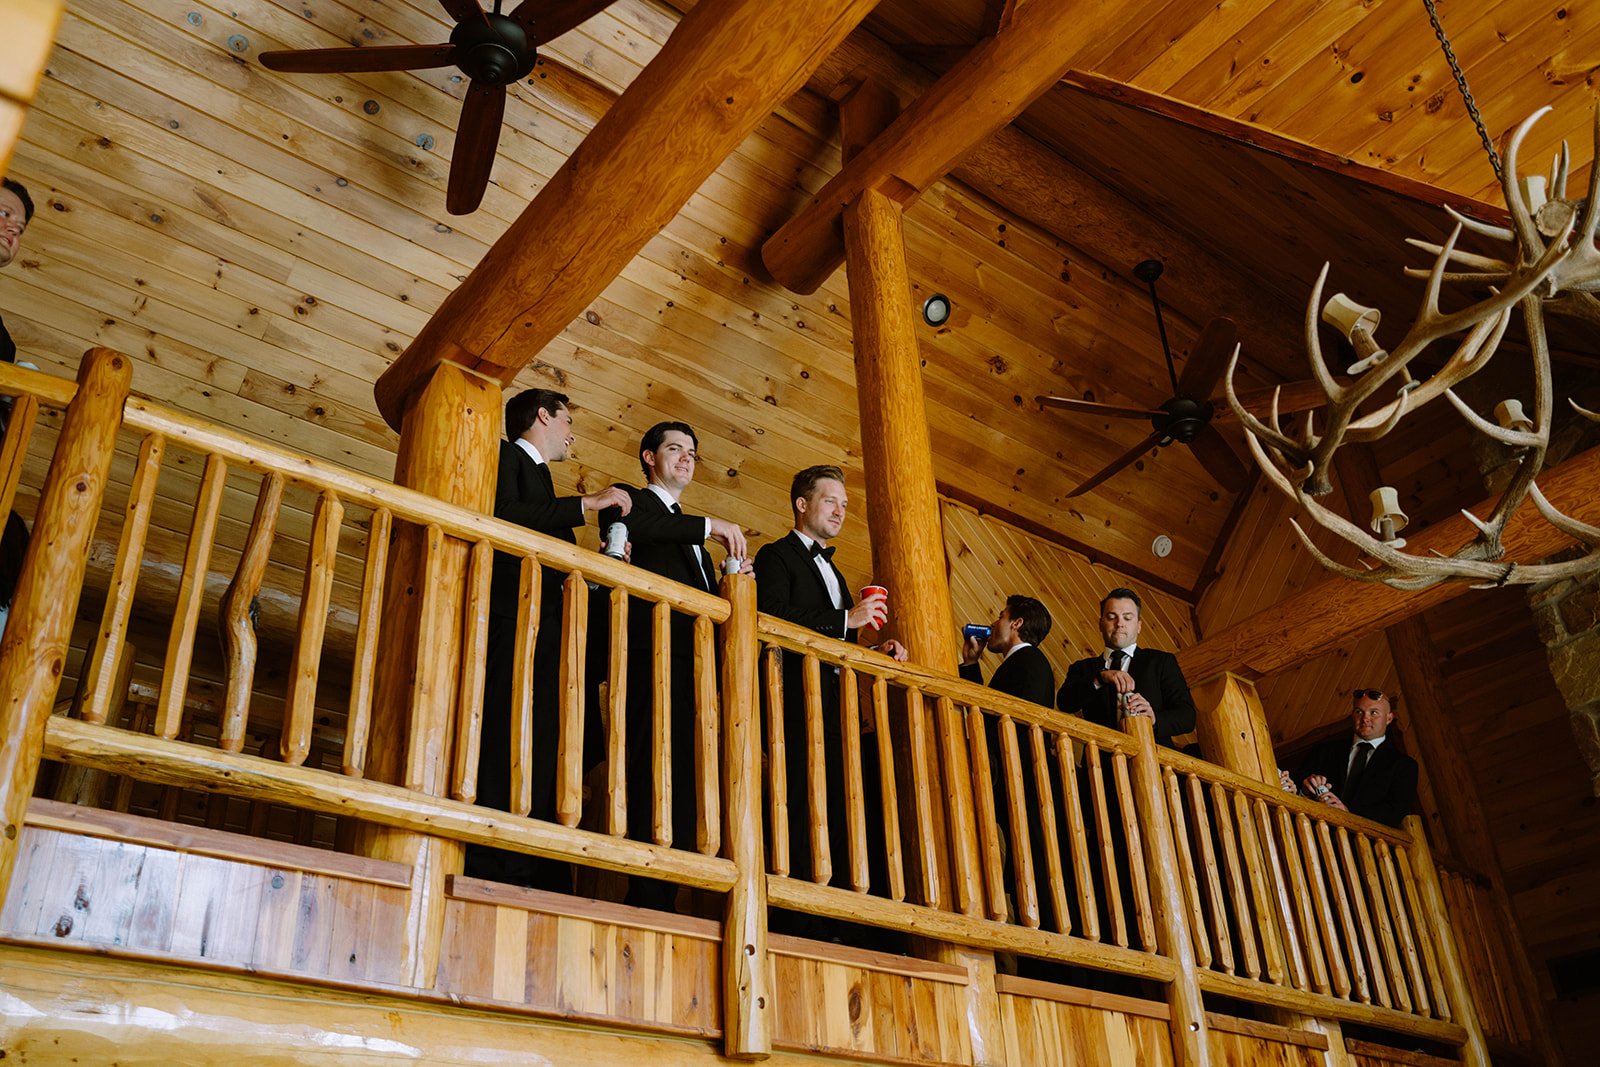 onsite-lodging-grooms-cabin-north-texas-wedding-venue-scr (4).jpg